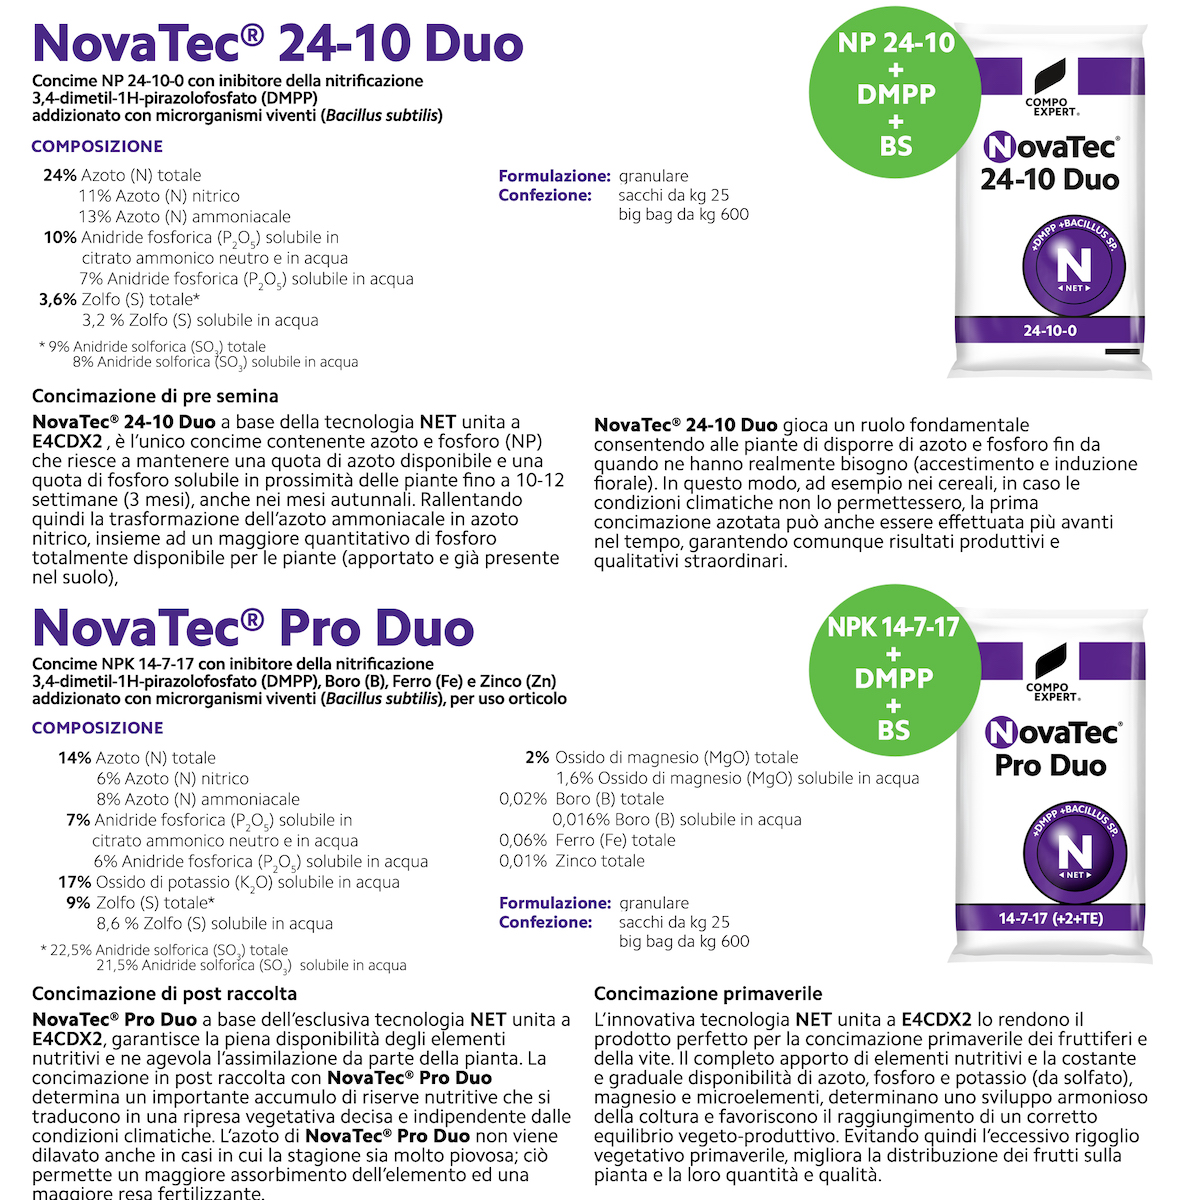 4-composizioni-novatec-duo-fonte-compo-expert.jpg